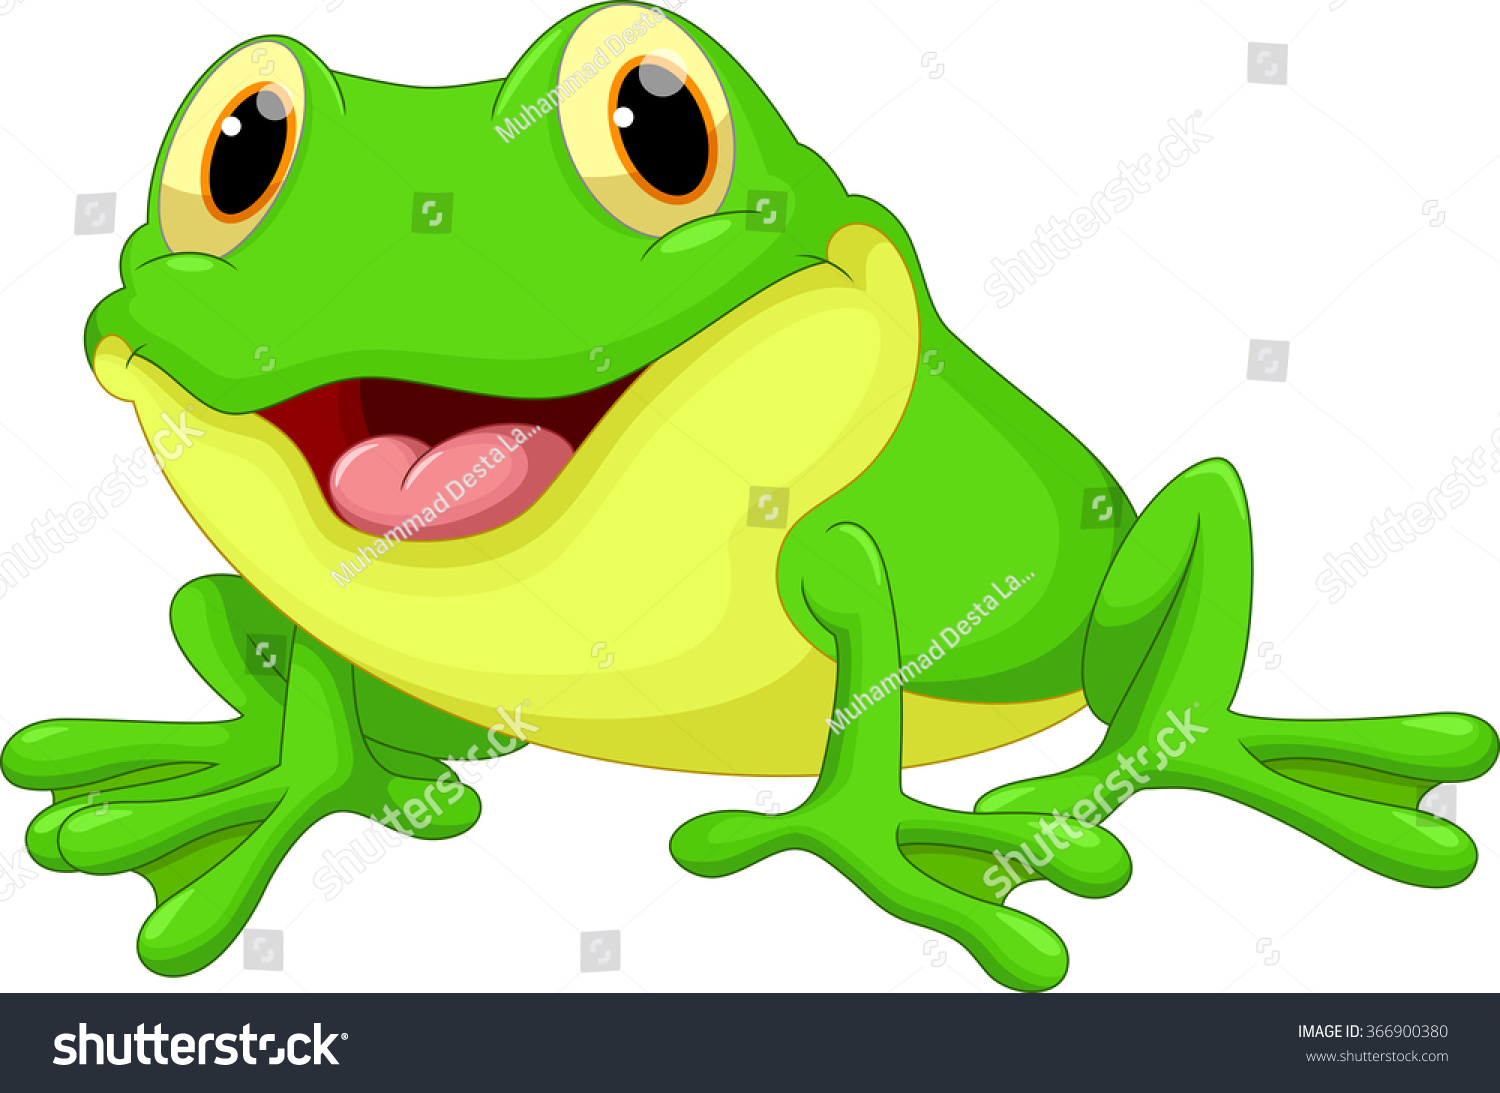 Cute Frog Cartoon Stock Vector Illustration 366900380 : Shutterstock